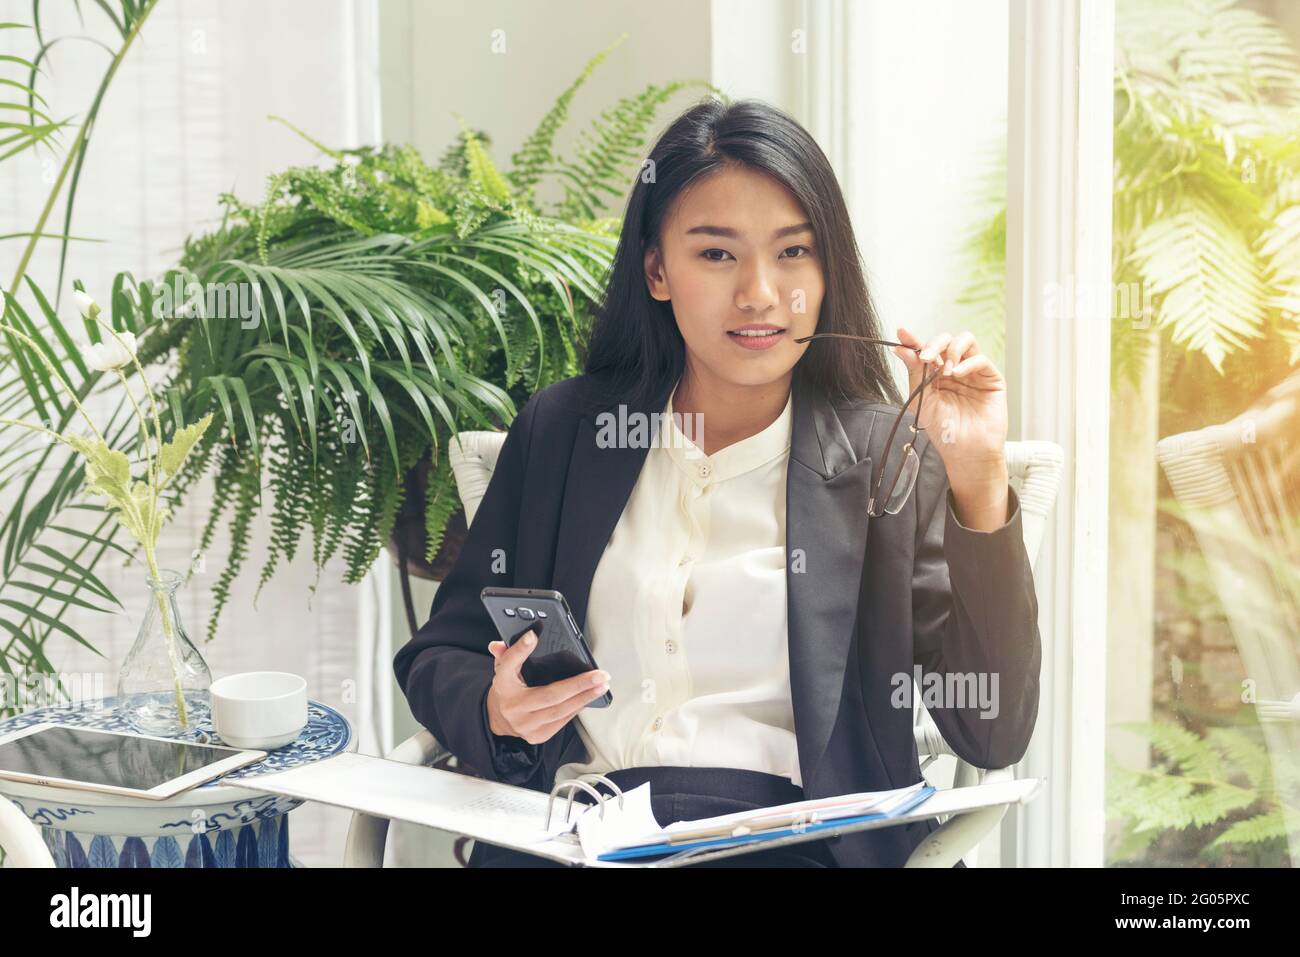 Porträt einer jungen Geschäftsführerin, die lächelt und die Kamera anschaut. Stockfoto